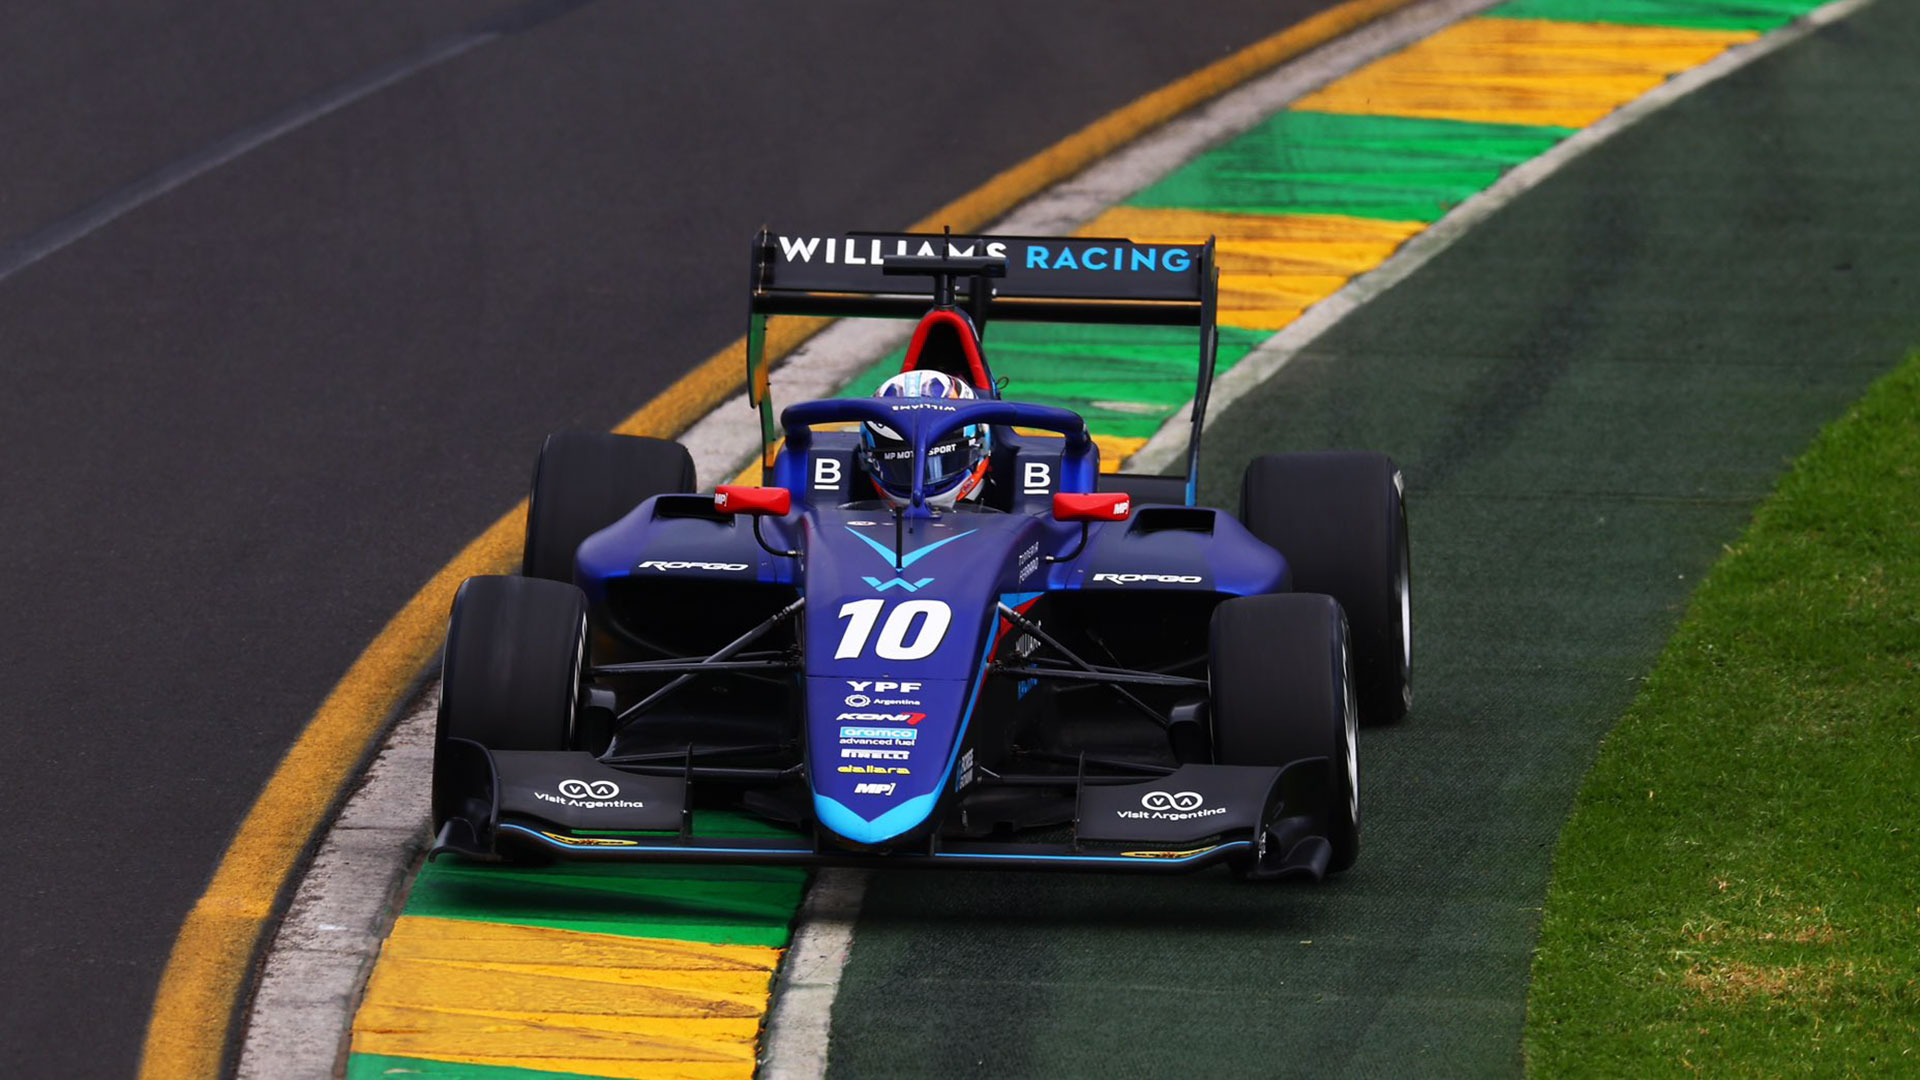 El argentino Franco Colapinto tuvo otra brillante actuación en la Fórmula 3 y ganó la carrera sprint